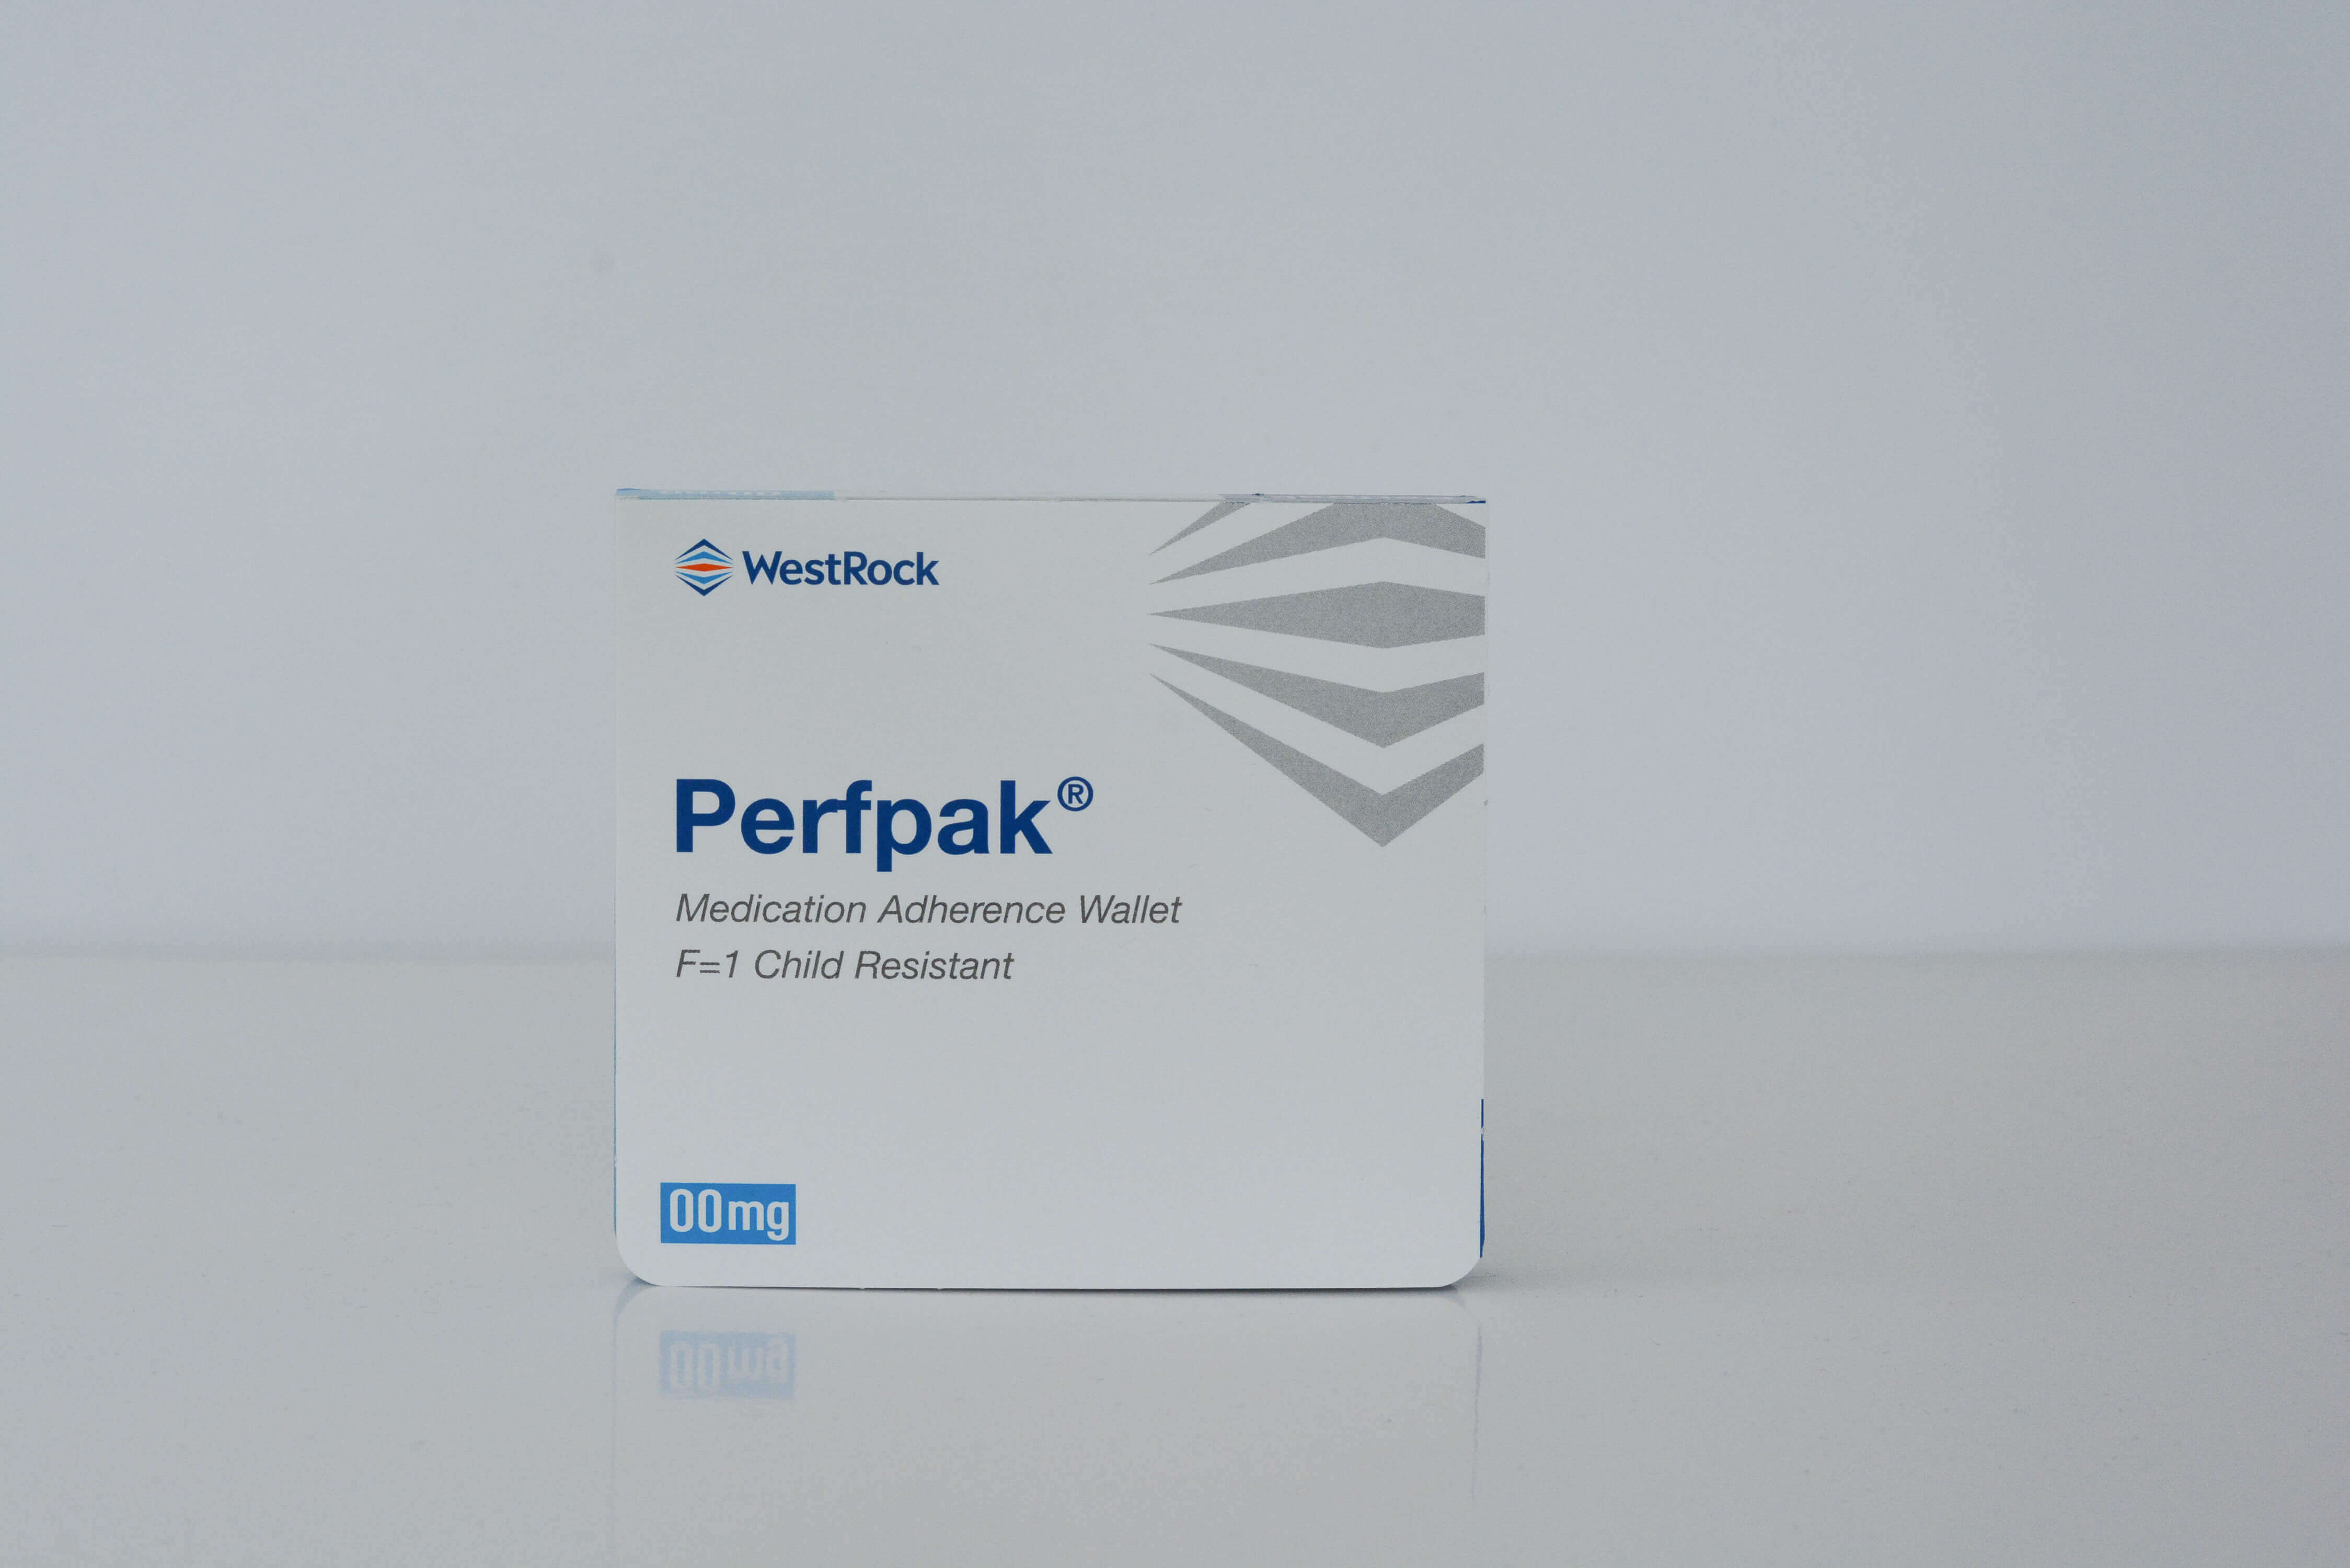 WestRock Perfpak adherence-focused packaging solutions